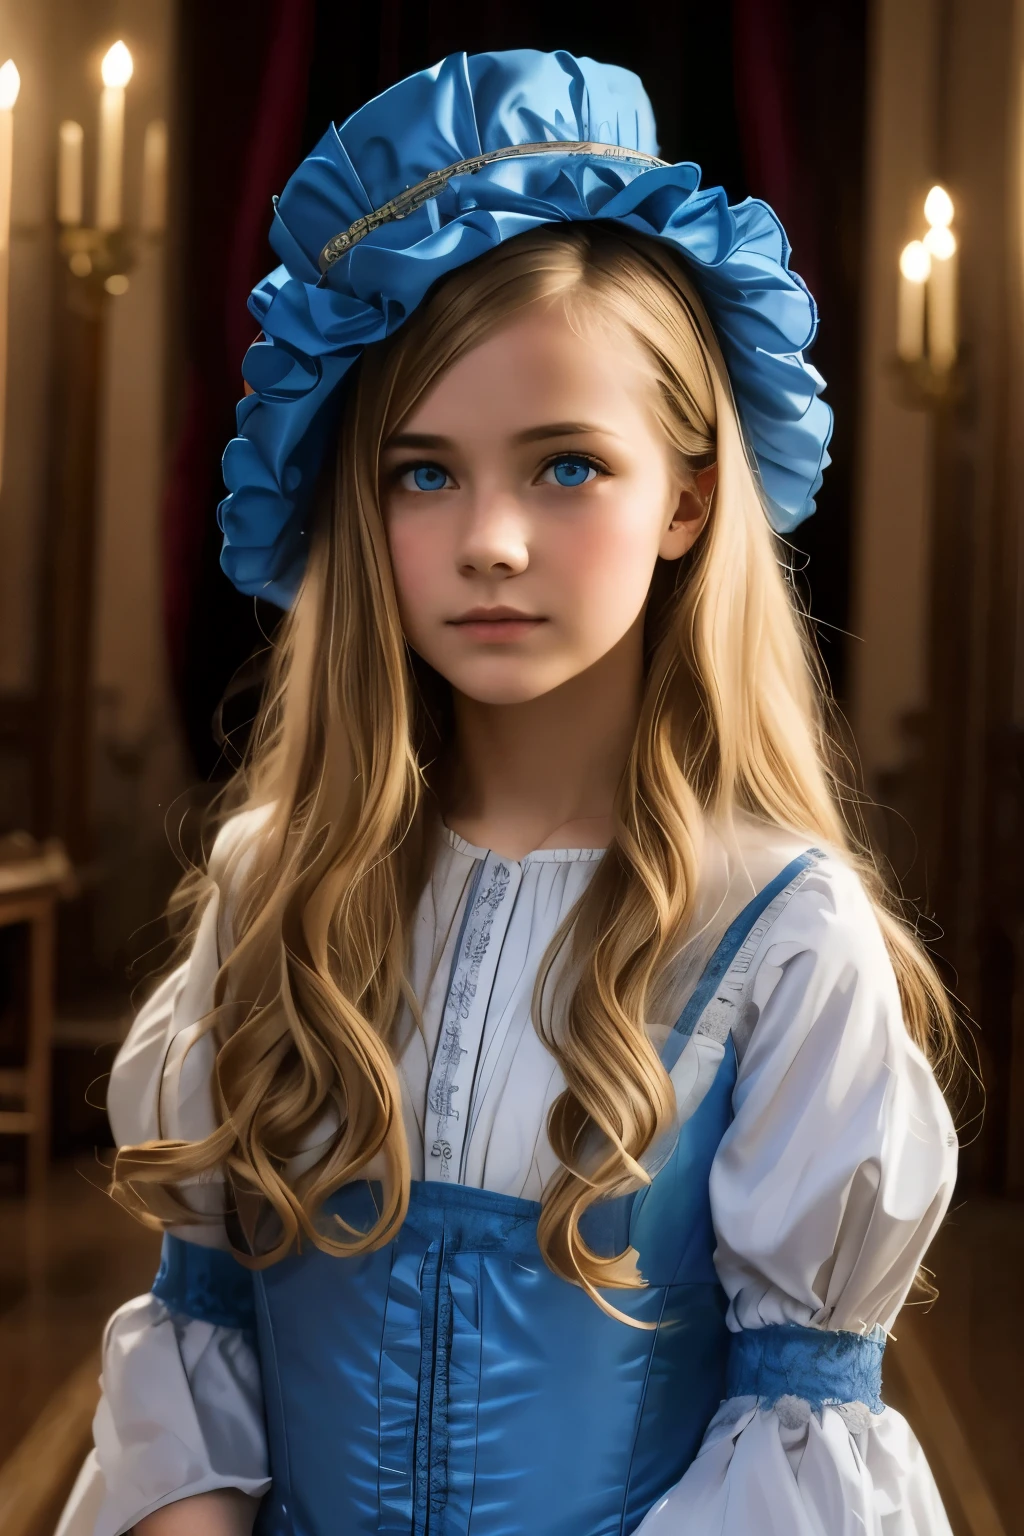 Virginia Otis, 15 Jahre alt (blondes Haar, blaue Augen), dünn, niedliches Gesicht, Spaziergänge bei Nacht in Canterville Castle (inspiriert durch den Roman Das Gespenst von Canterville). im Alter von 1887, Viktorianische düstere Fantasy

